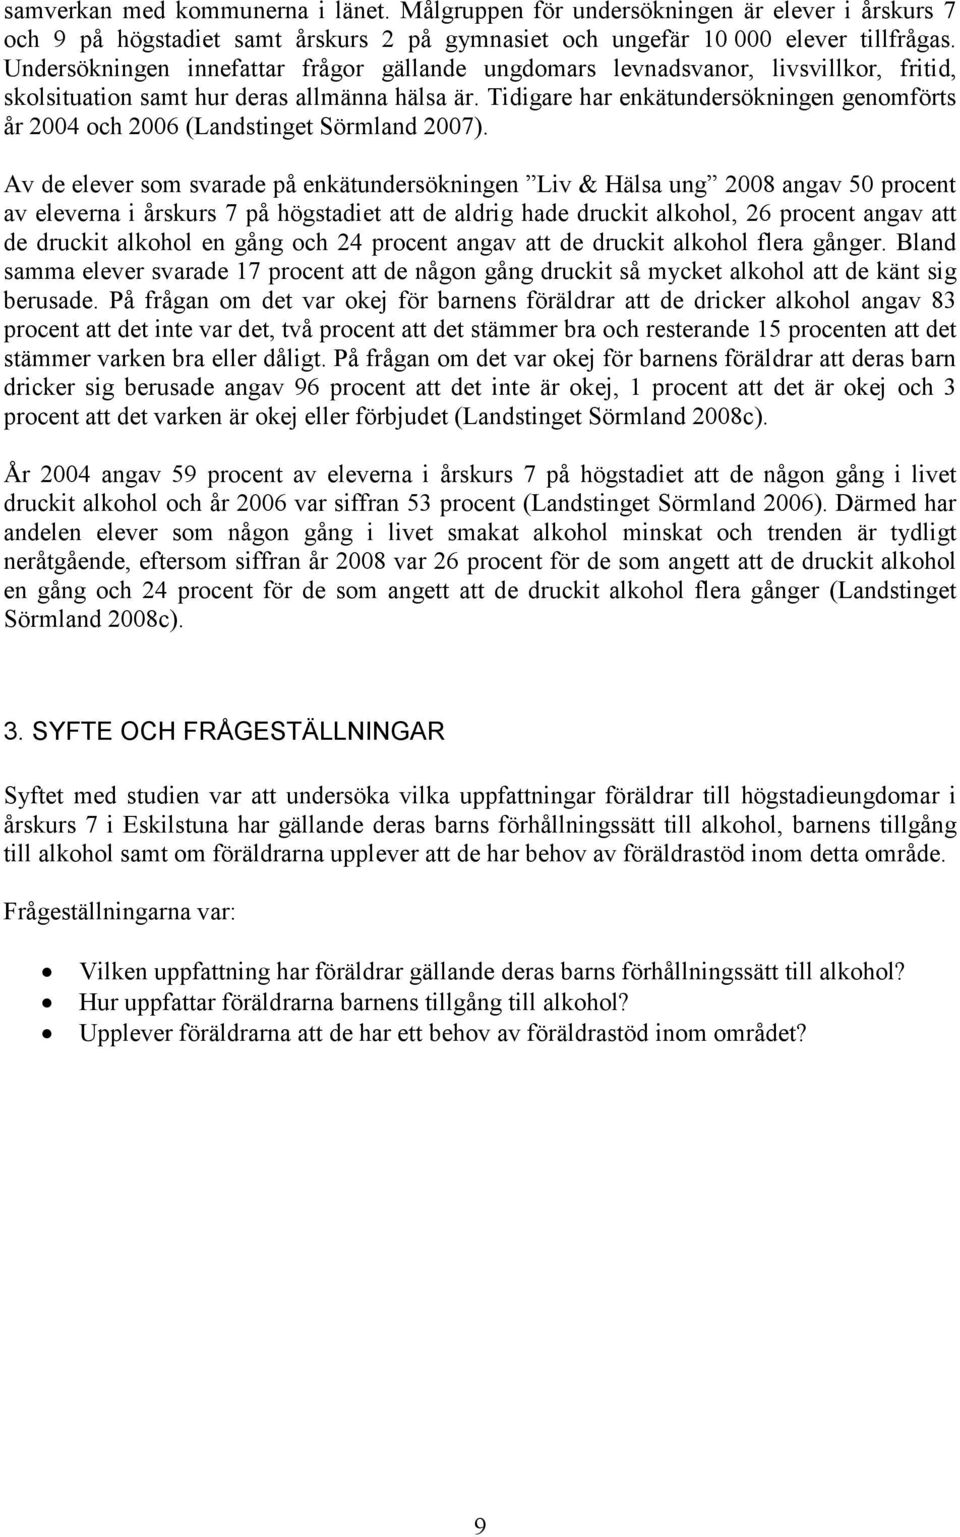 Tidigare har enkätundersökningen genomförts år 2004 och 2006 (Landstinget Sörmland 2007).